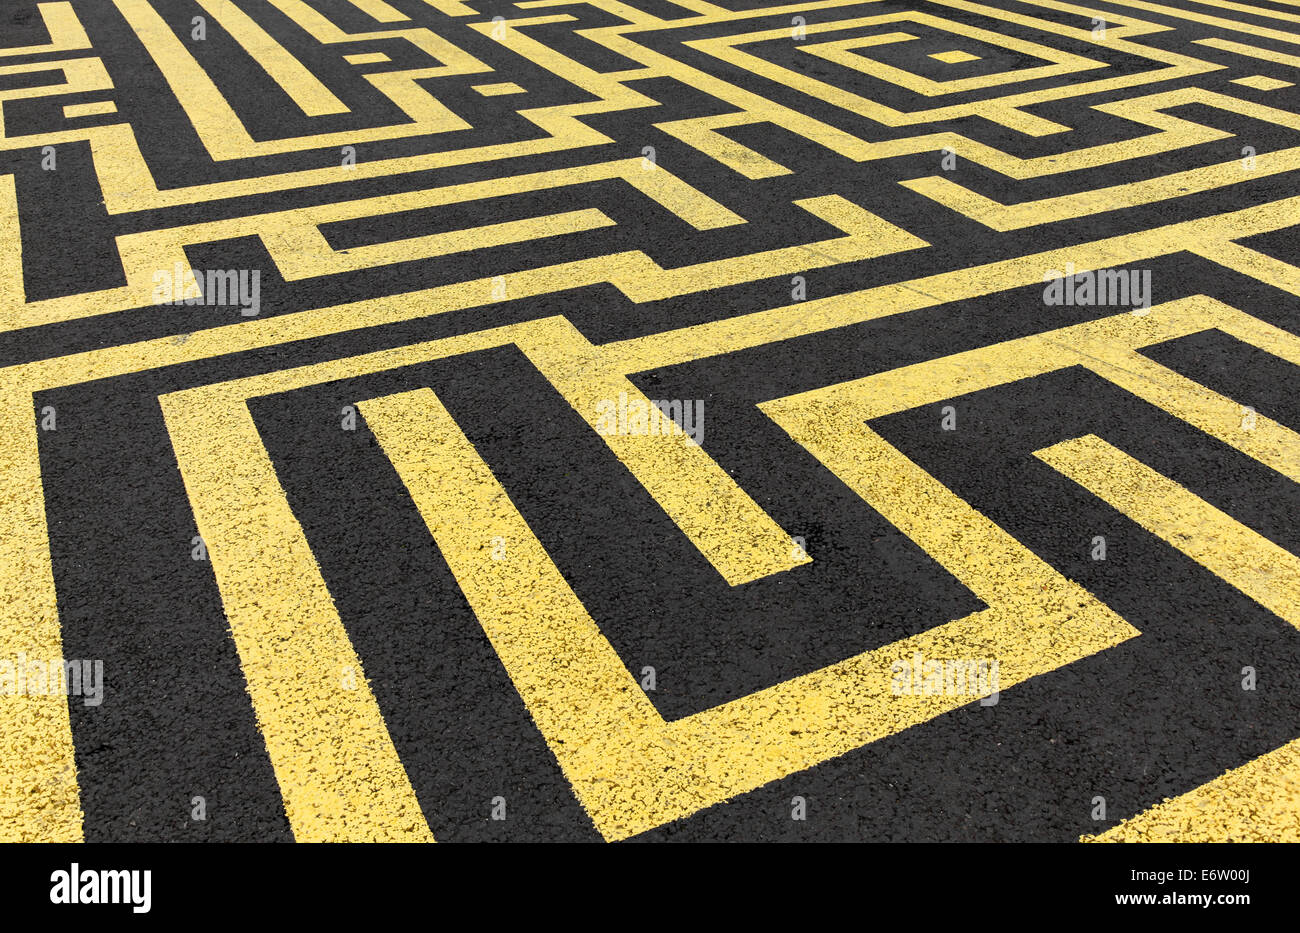 Labyrinthe jaune peinte sur une route d'asphalte noir Banque D'Images